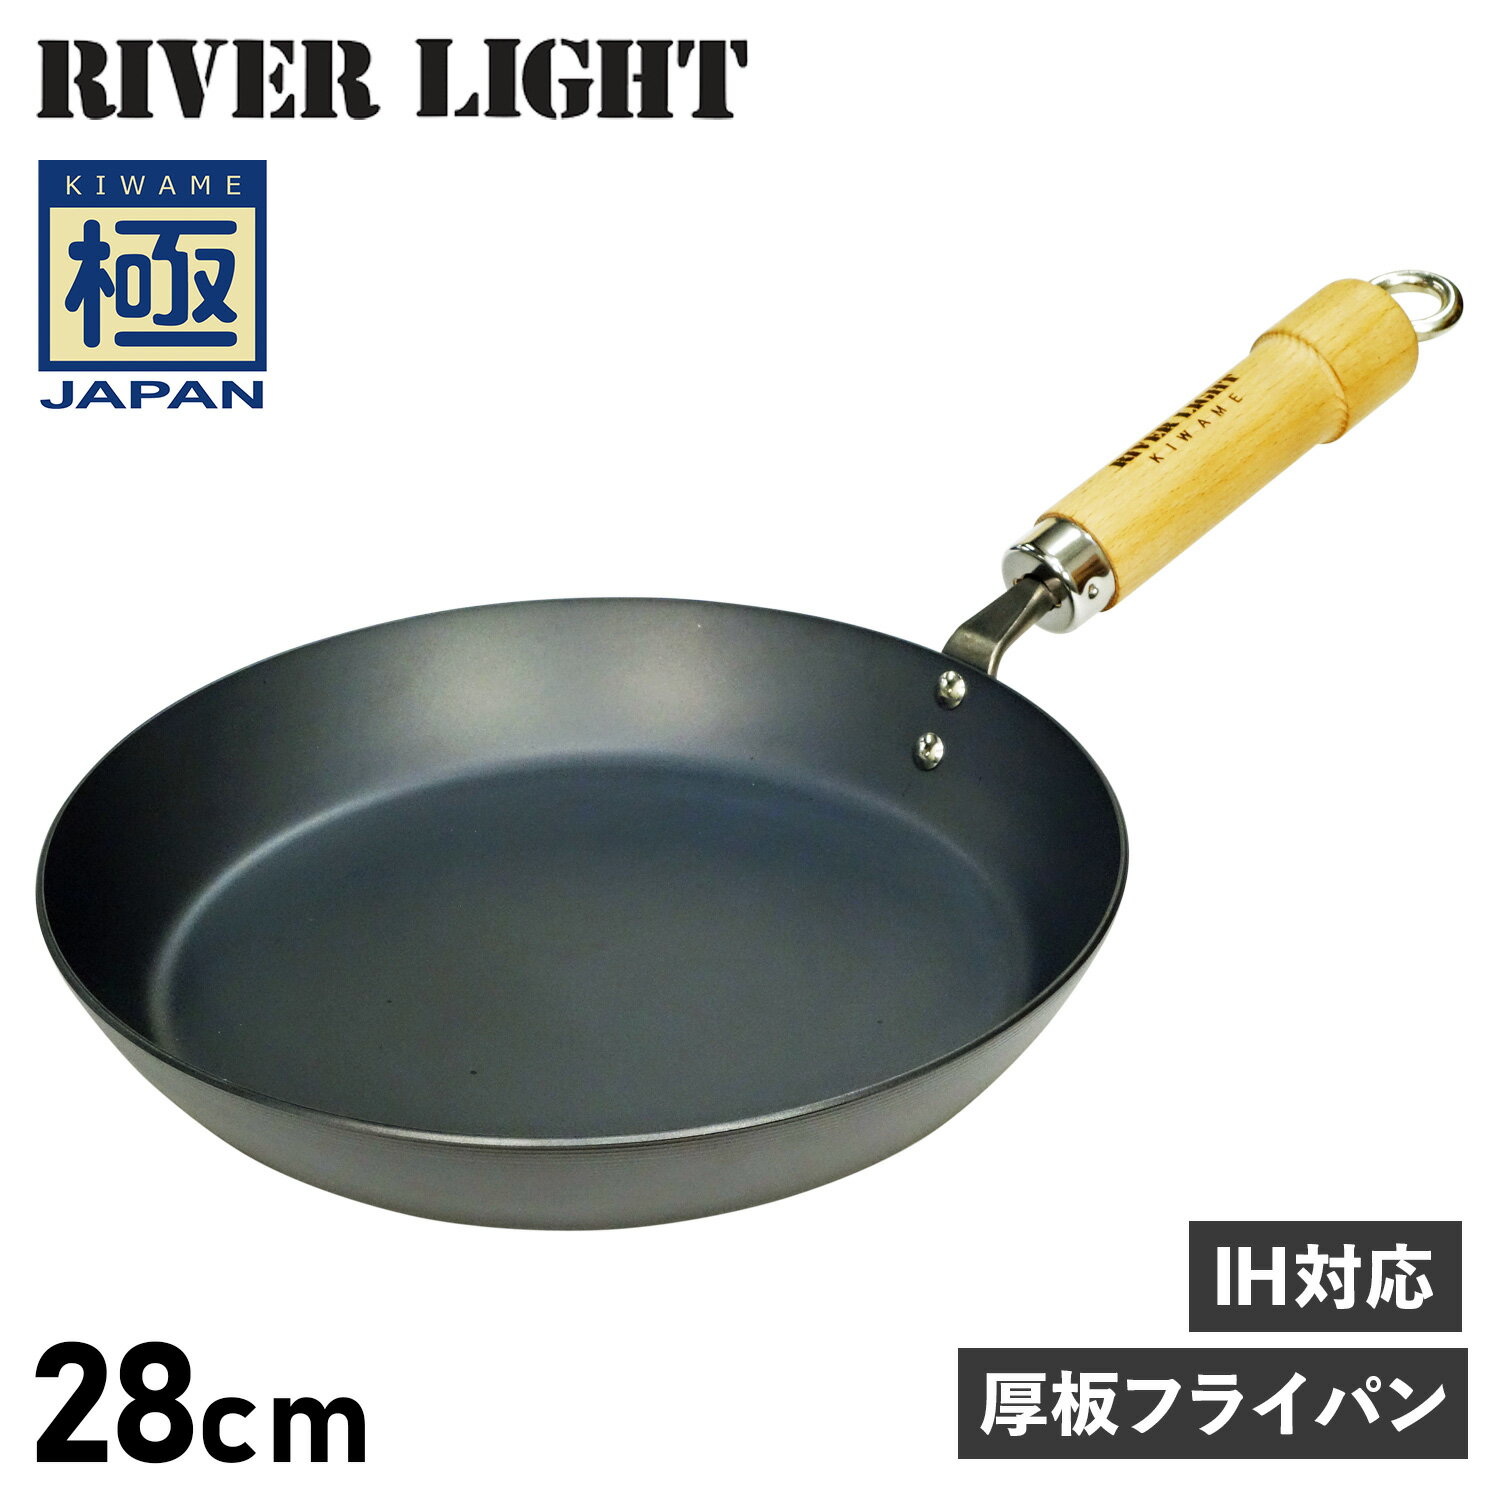 RIVER LIGHT 極JAPAN リバーライト 極 フライパン 厚板フライパン 28cm IH ガス対応 鉄 J2328 アウトドア